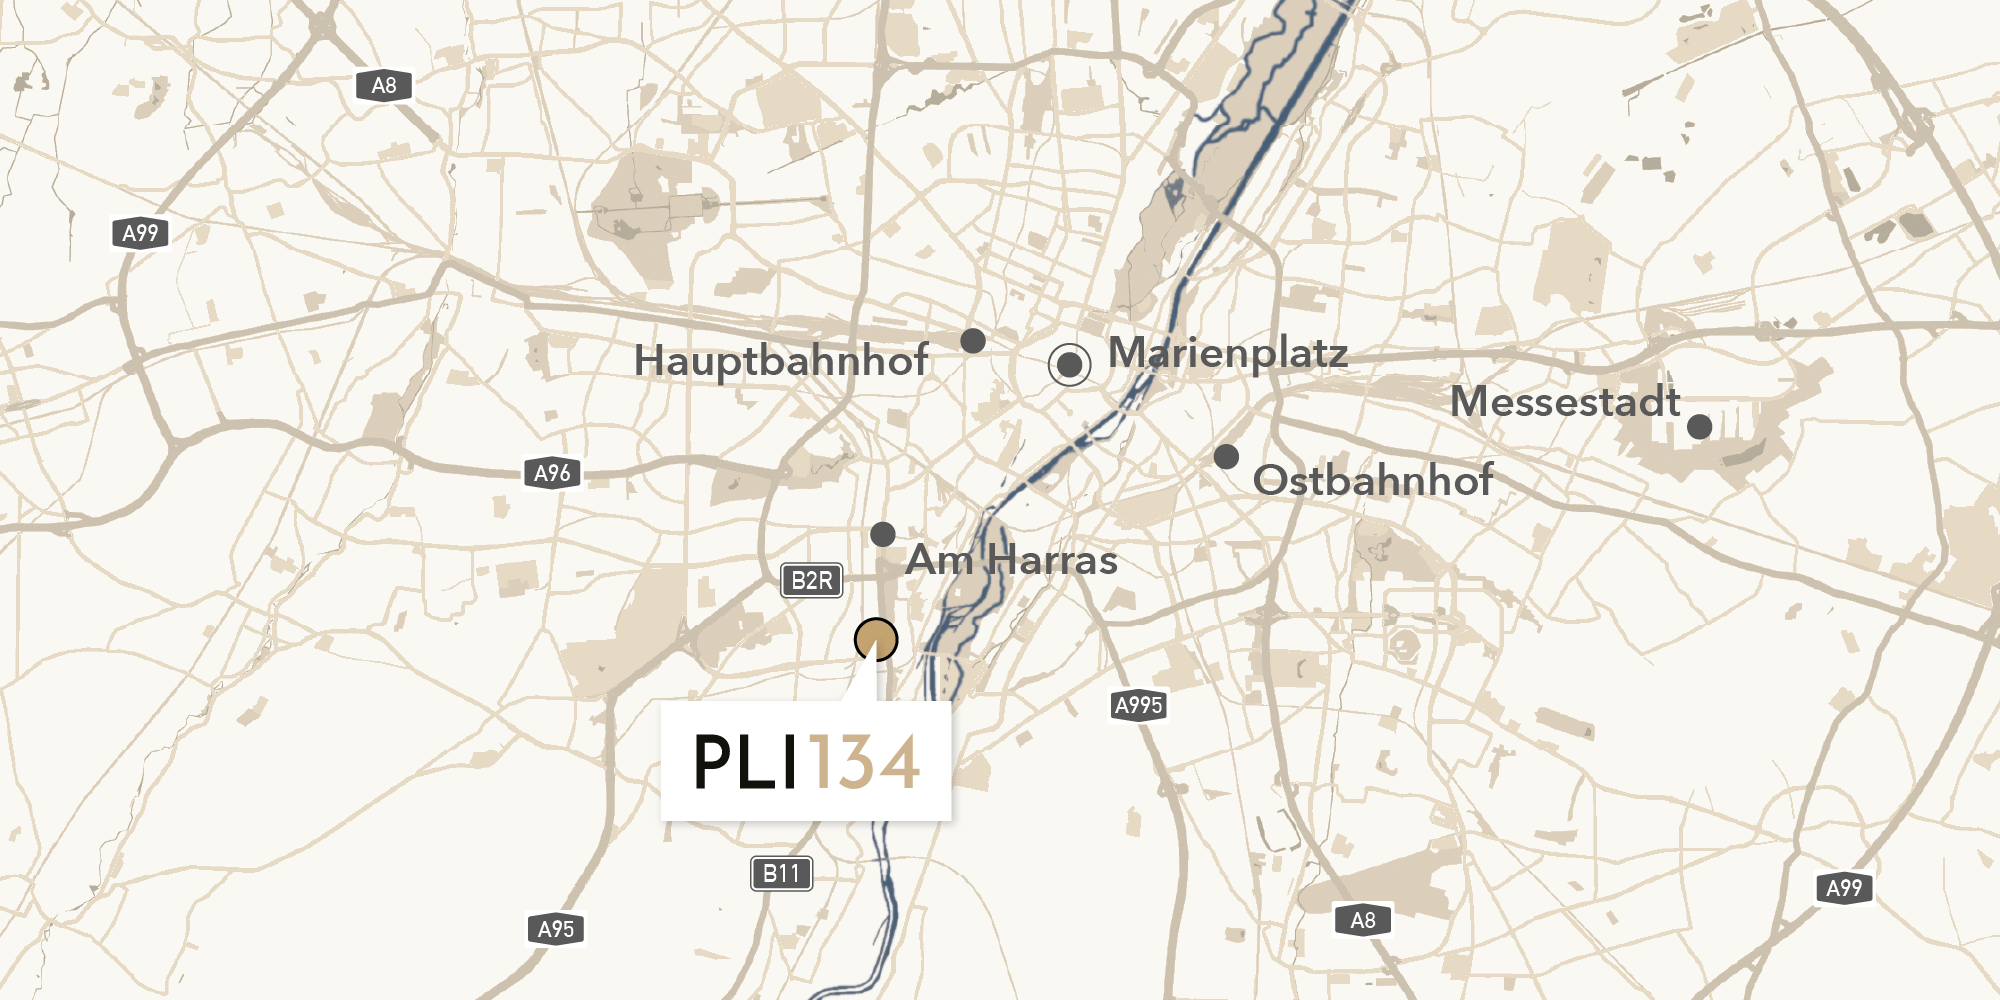 Karte von München mit Markierung des Standorts von Plinganser134, sowie Markierungen für Hauptbahnhof, Marienplatz, Am Harras, Ostbahnhof und Messestadt.